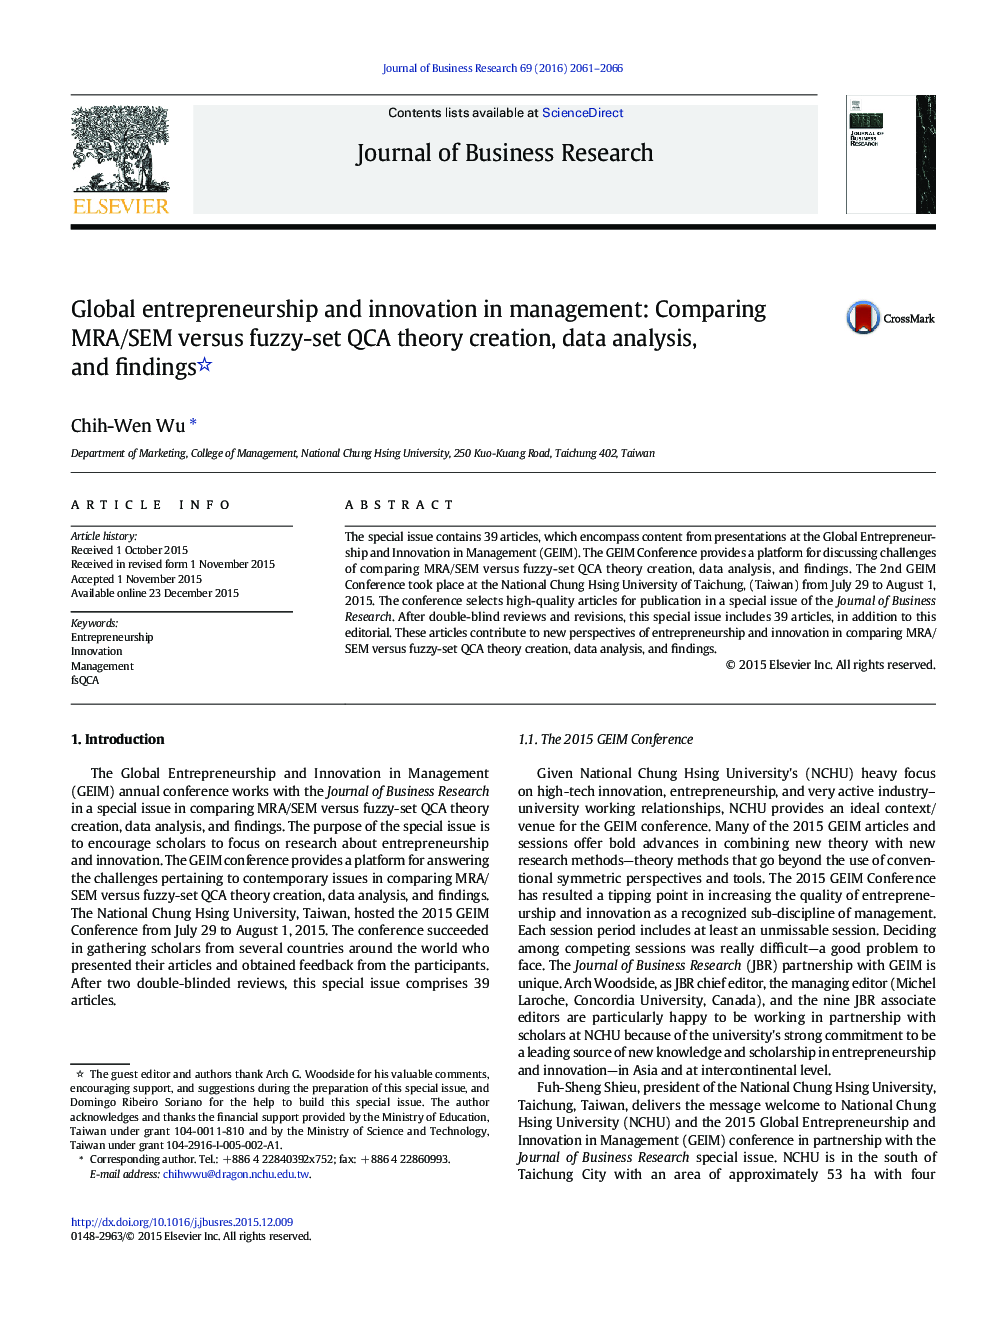 کارآفرینی جهانی و نوآوری در مدیریت: مقایسه MRA/SEM در مقابل ایجاد نظریه مجموعه فازی QCA، تجزیه و تحلیل داده ها و یافته ها 